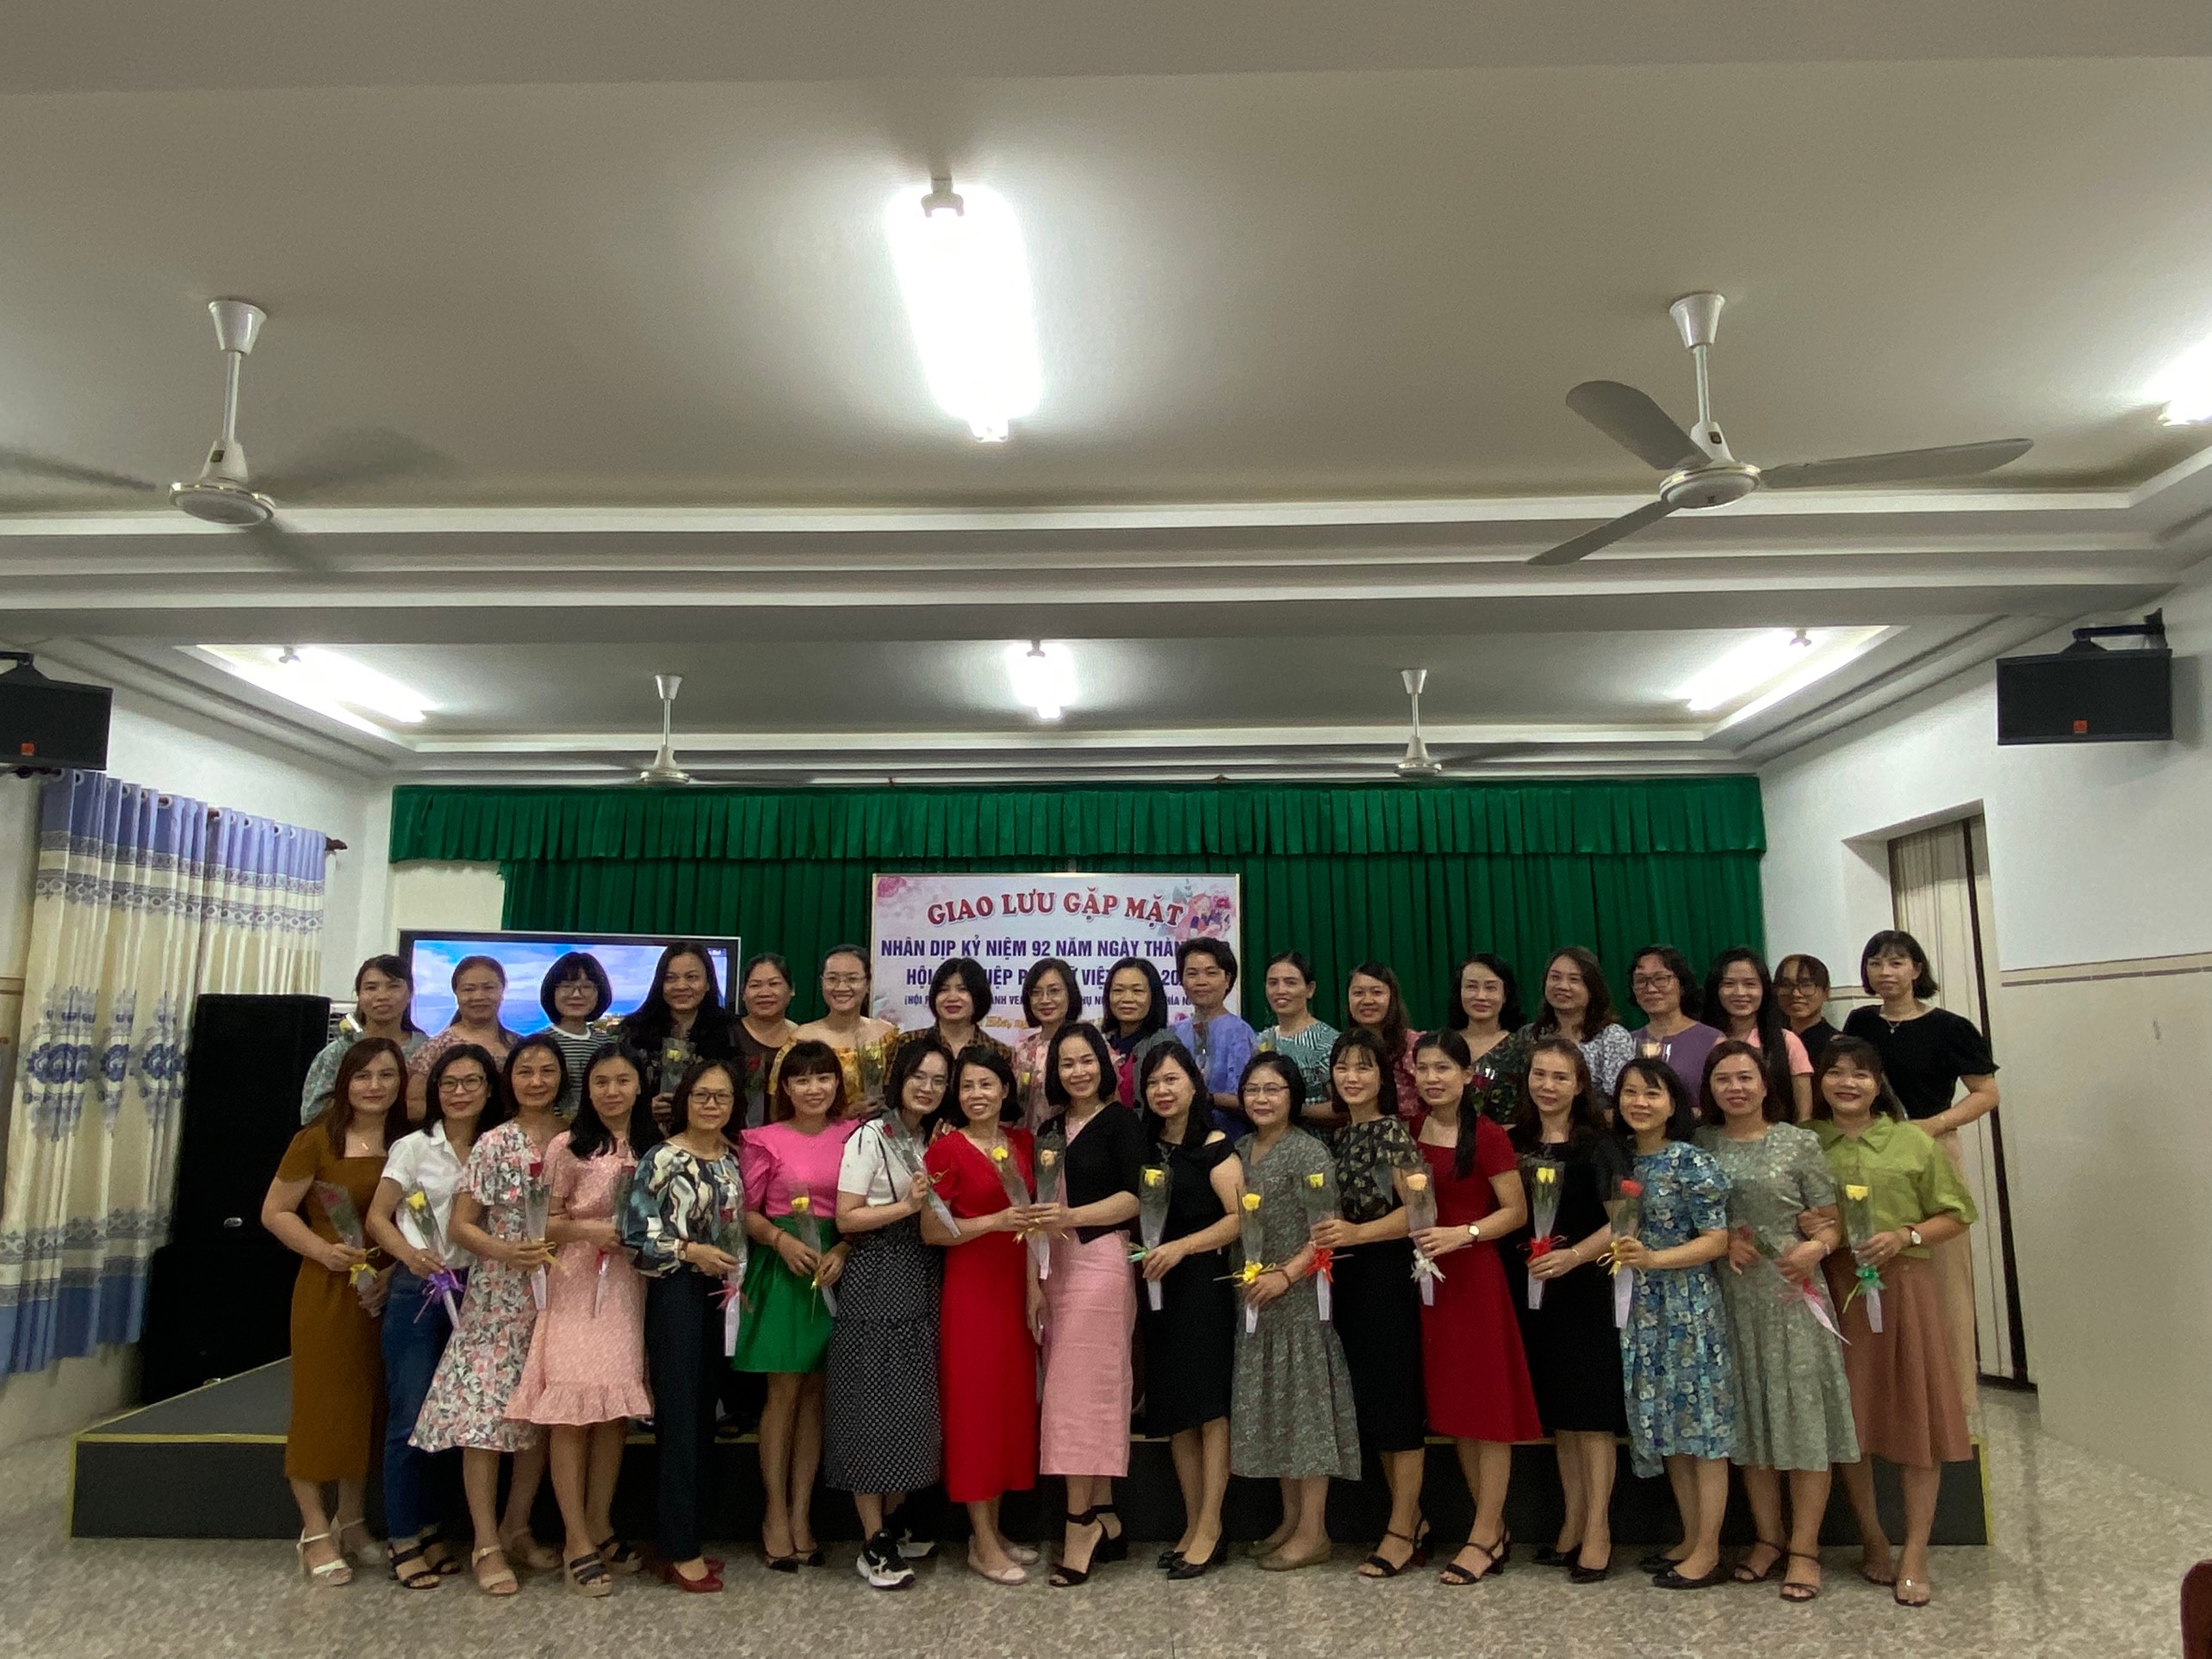 Chi nhánh Phía Nam tổ chức hoạt động kỷ niệm 92 năm Ngày thành lập Hội Liên hiệp Phụ nữ Việt Nam và ngày Phụ nữ Việt Nam 